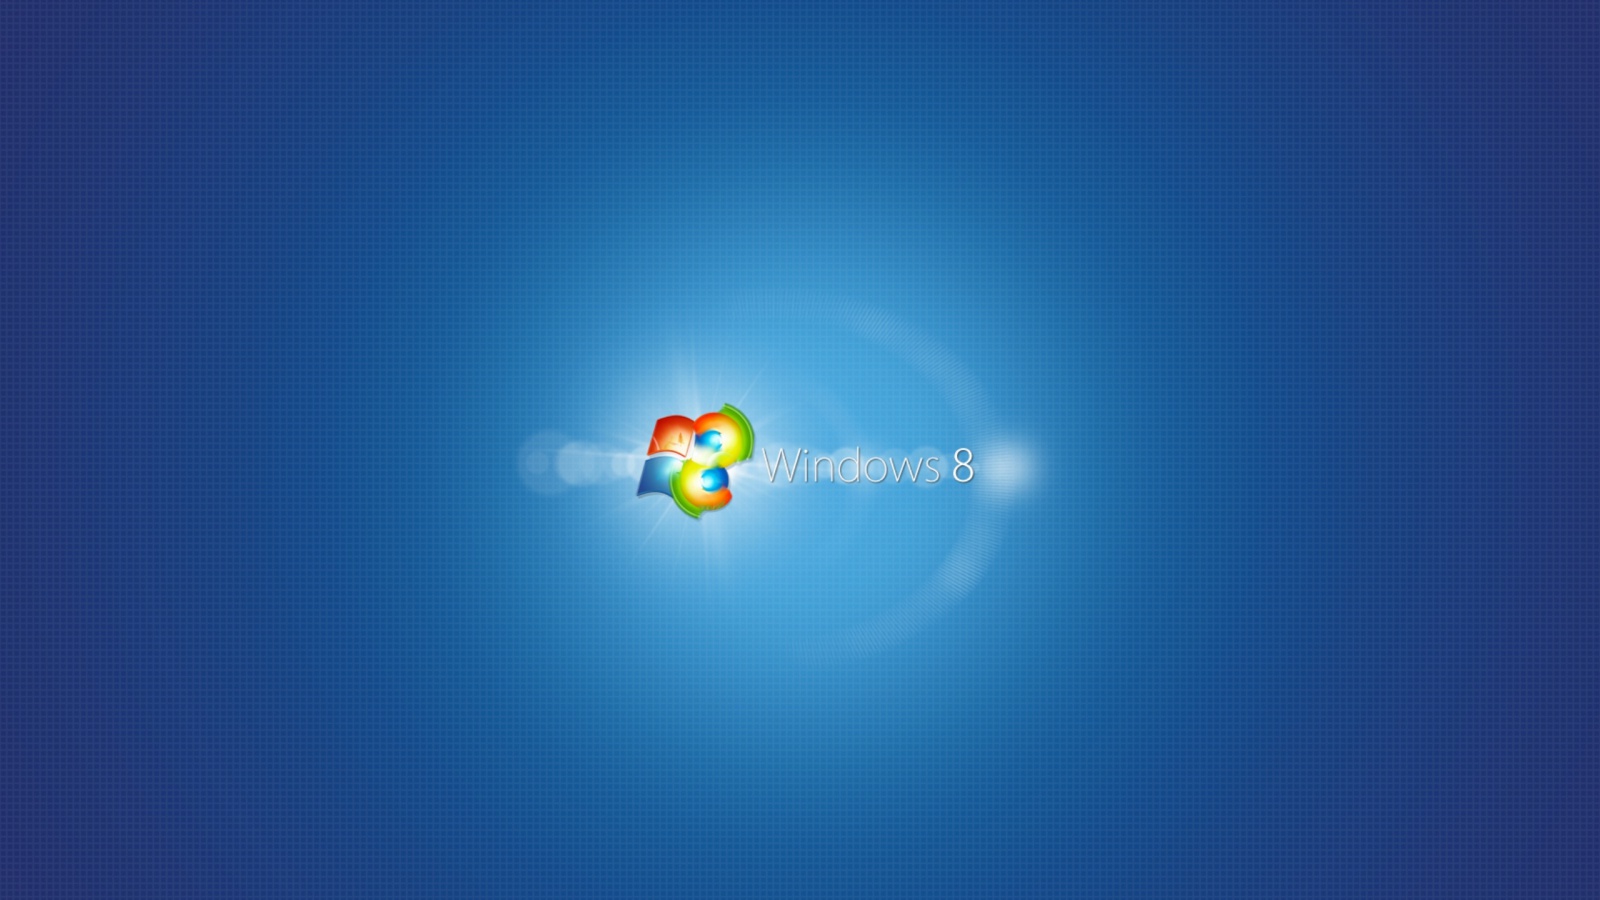 Windows New Look Wallpaper Desktop Background In